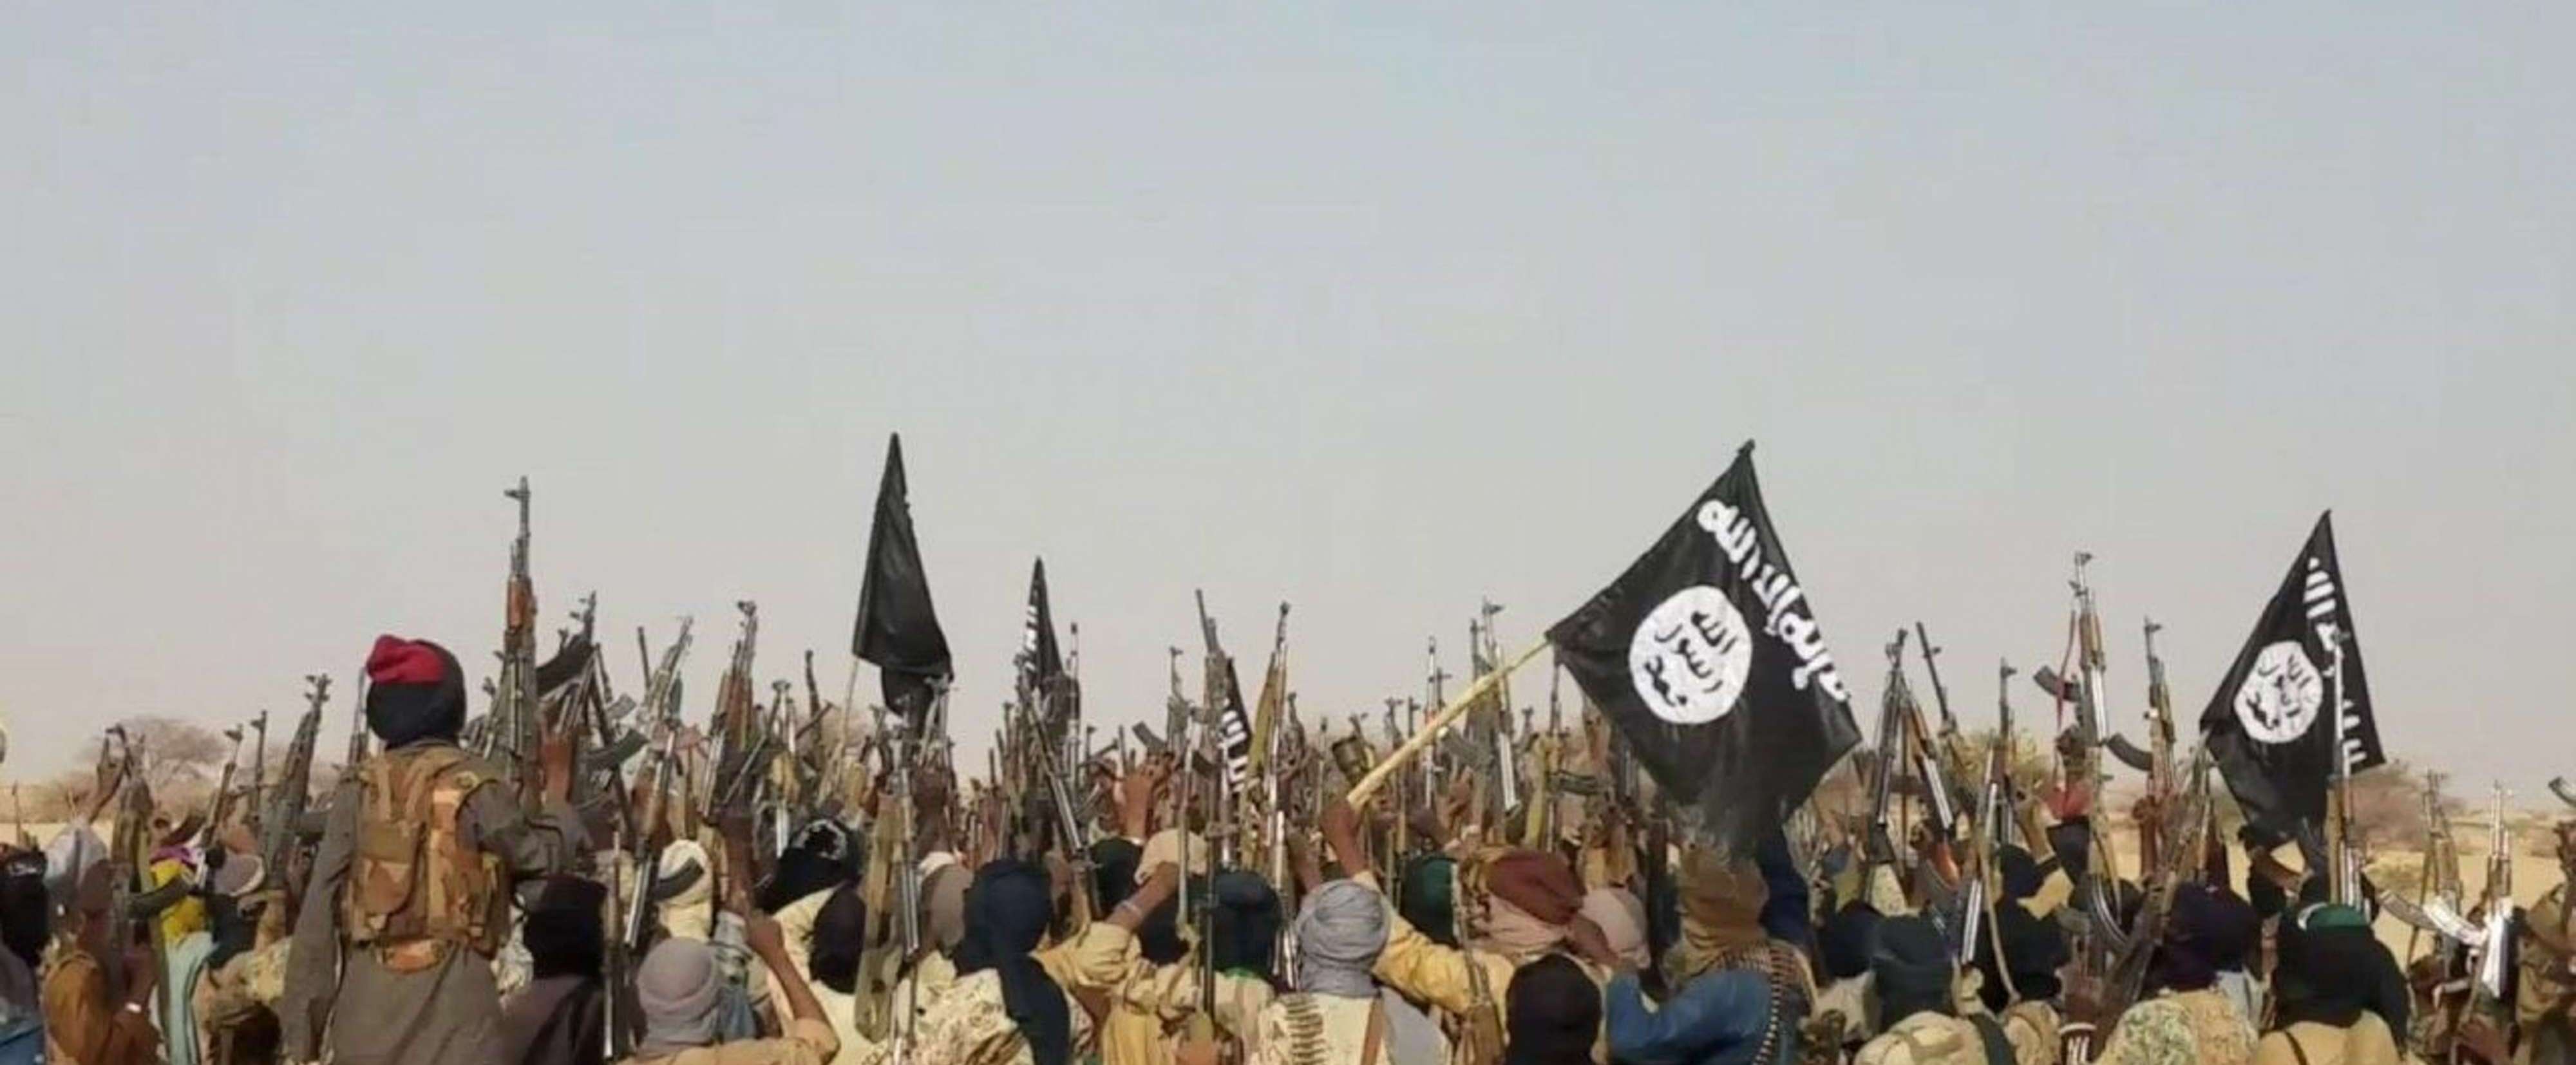 داعش افريقيا يتخلص من زعيم جماعة بوكو حرام وعشرات من قادتها بينما يعمل على استقطاب مقاتليها وعددهم بالآلاف